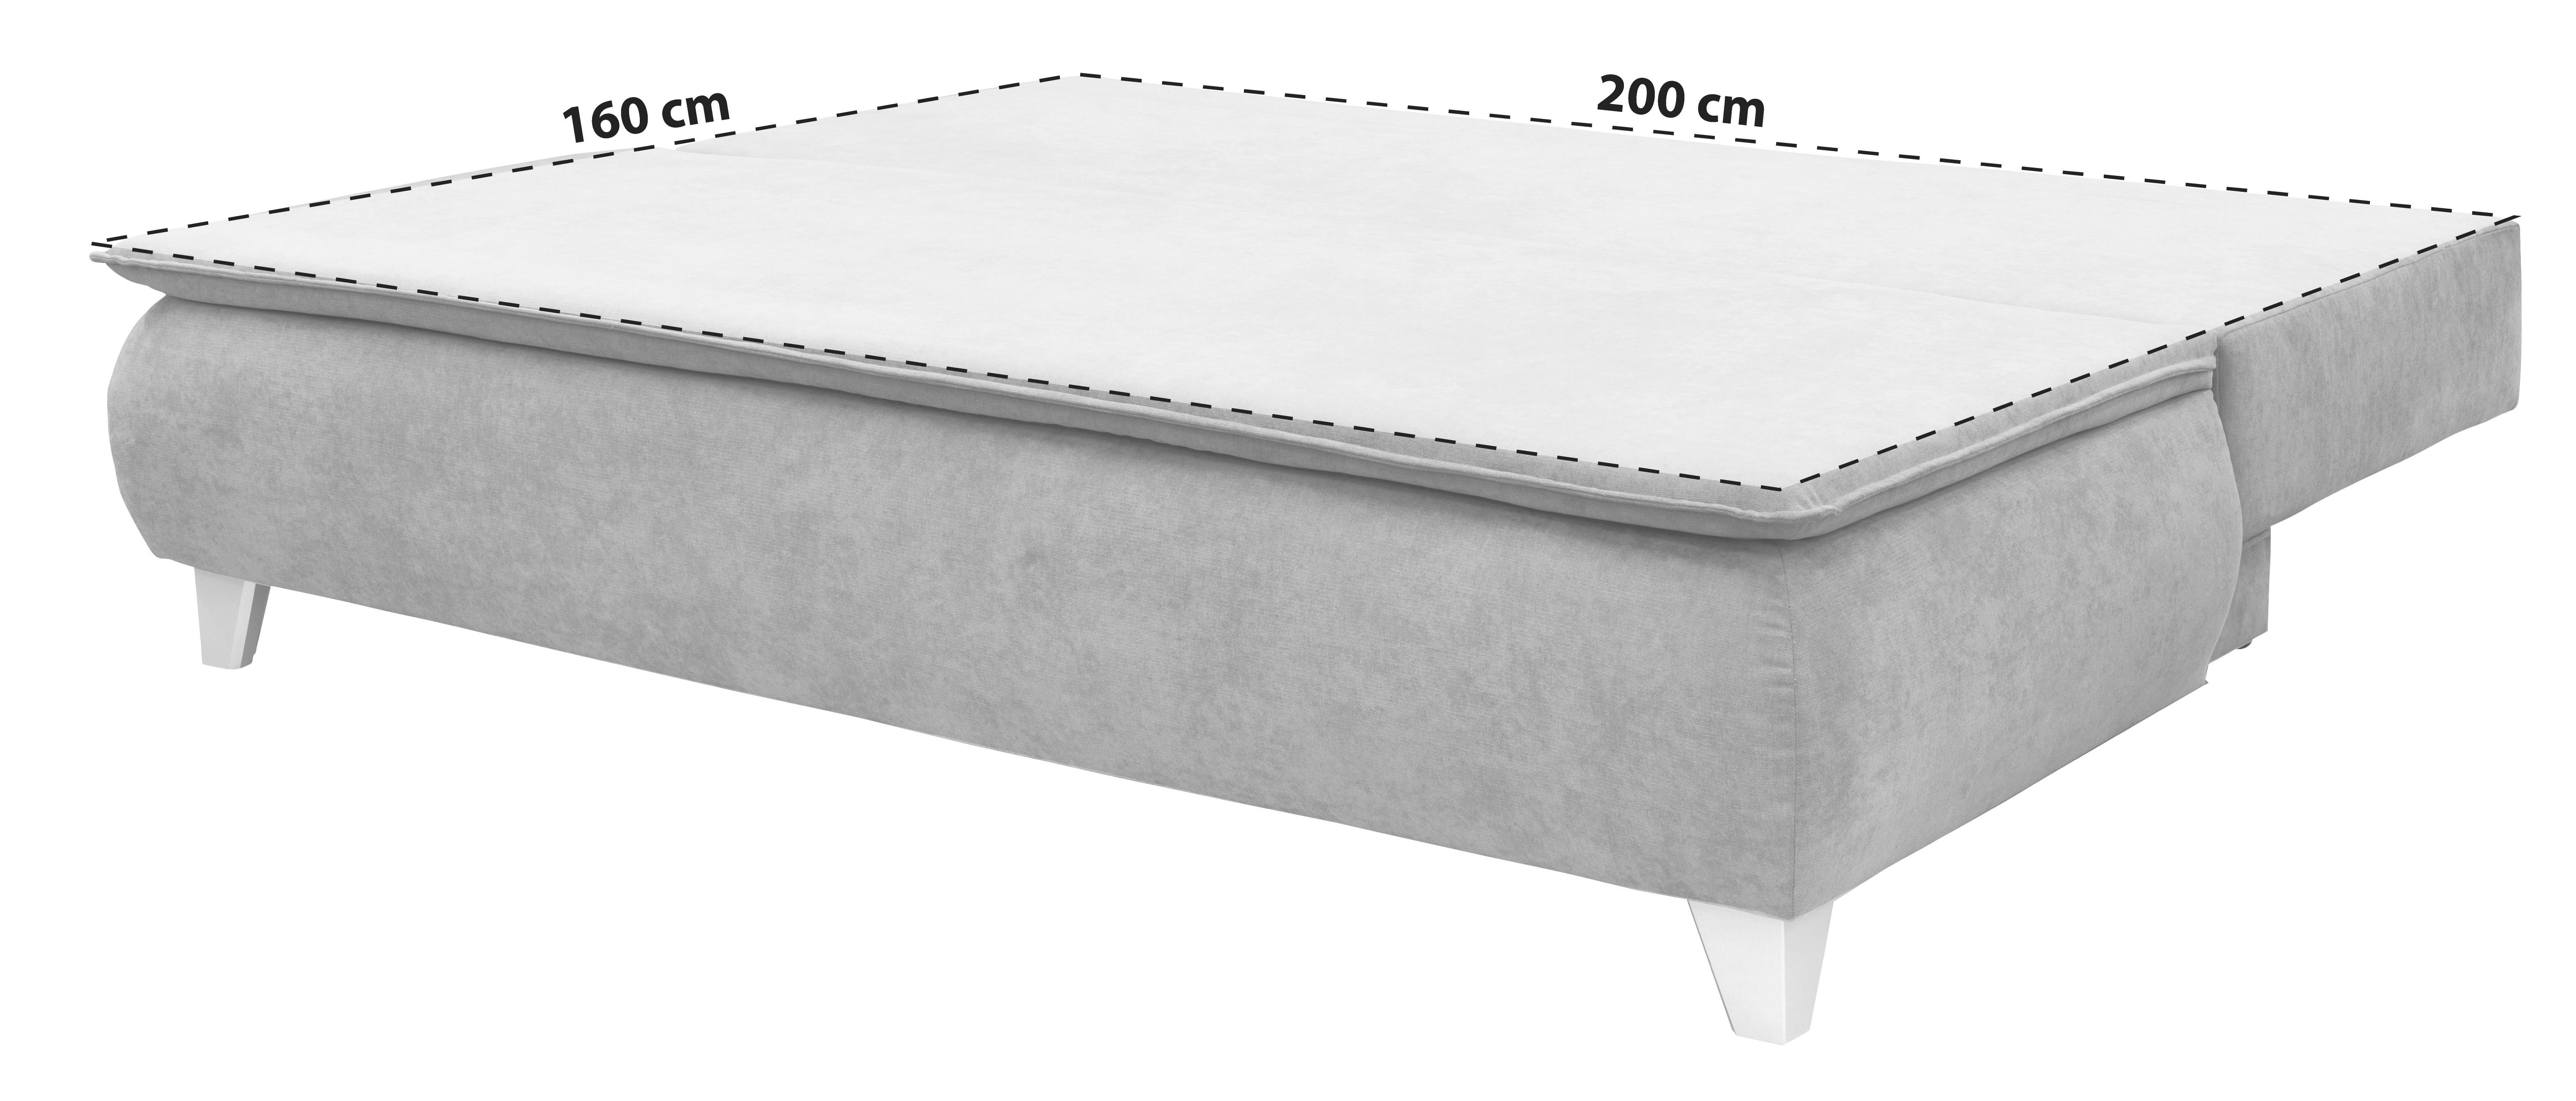 Sofa Mona - antracit, Modern, tekstil (208/100/106cm) - Modern Living